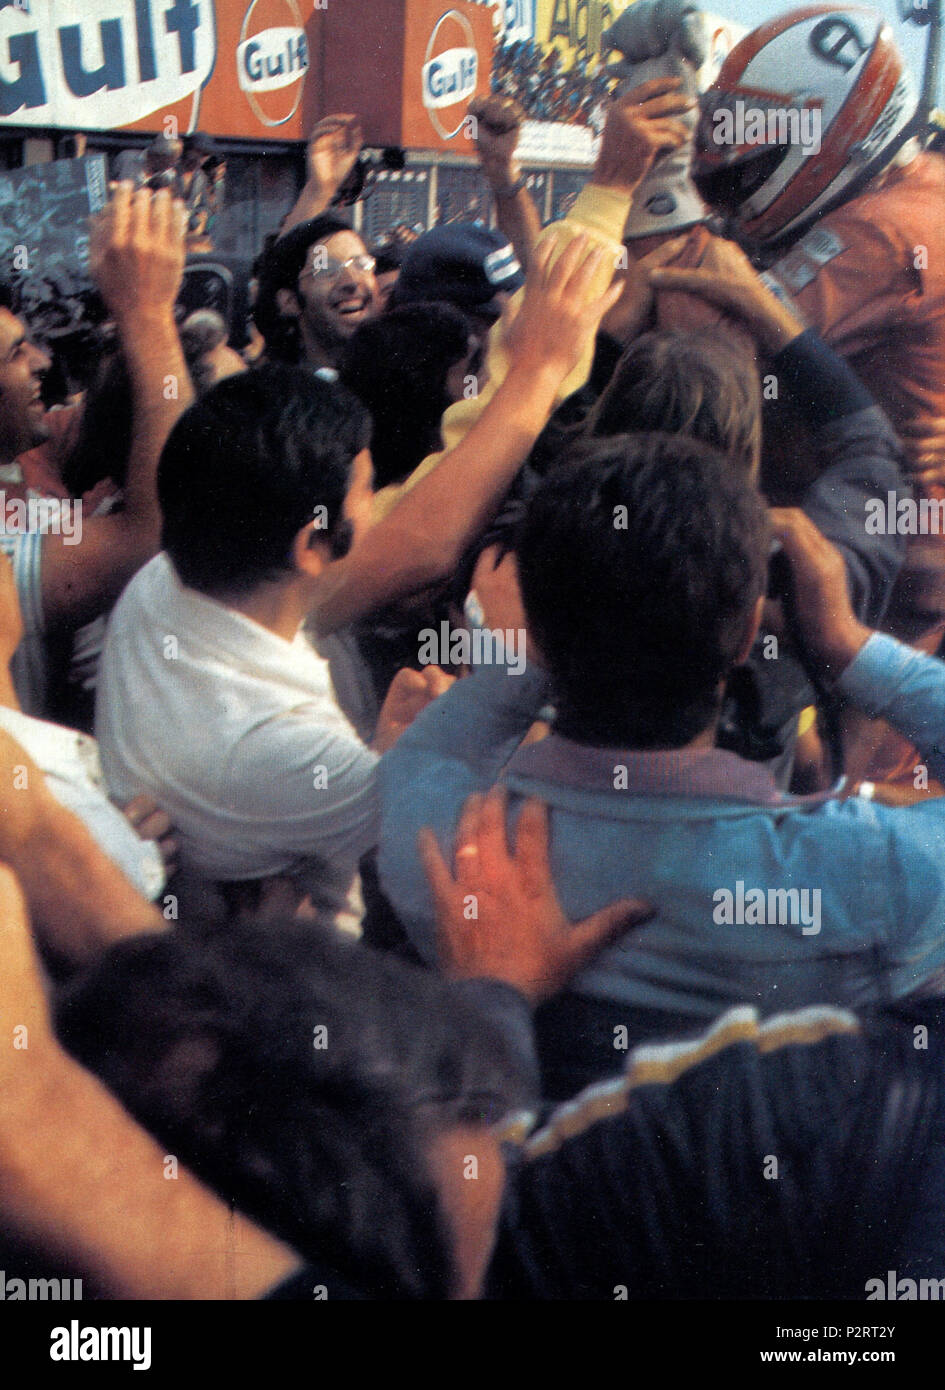 . Italiano: Monza, Autodromo Nazionale, 7 settembre 1975. XLVI Gran Premio d'Italia. La Scuderia Ferrari e i tifosi italiani festeggiano il pilota svizzero Clay Regazzoni (in alto a destra) al termine della sua vittoriosa corsa. Il 7 settembre 1975. 2 sconosciuto 1975 GP DI ITALIA - festa Ferrari per il vincitore Clay Regazzoni Foto Stock